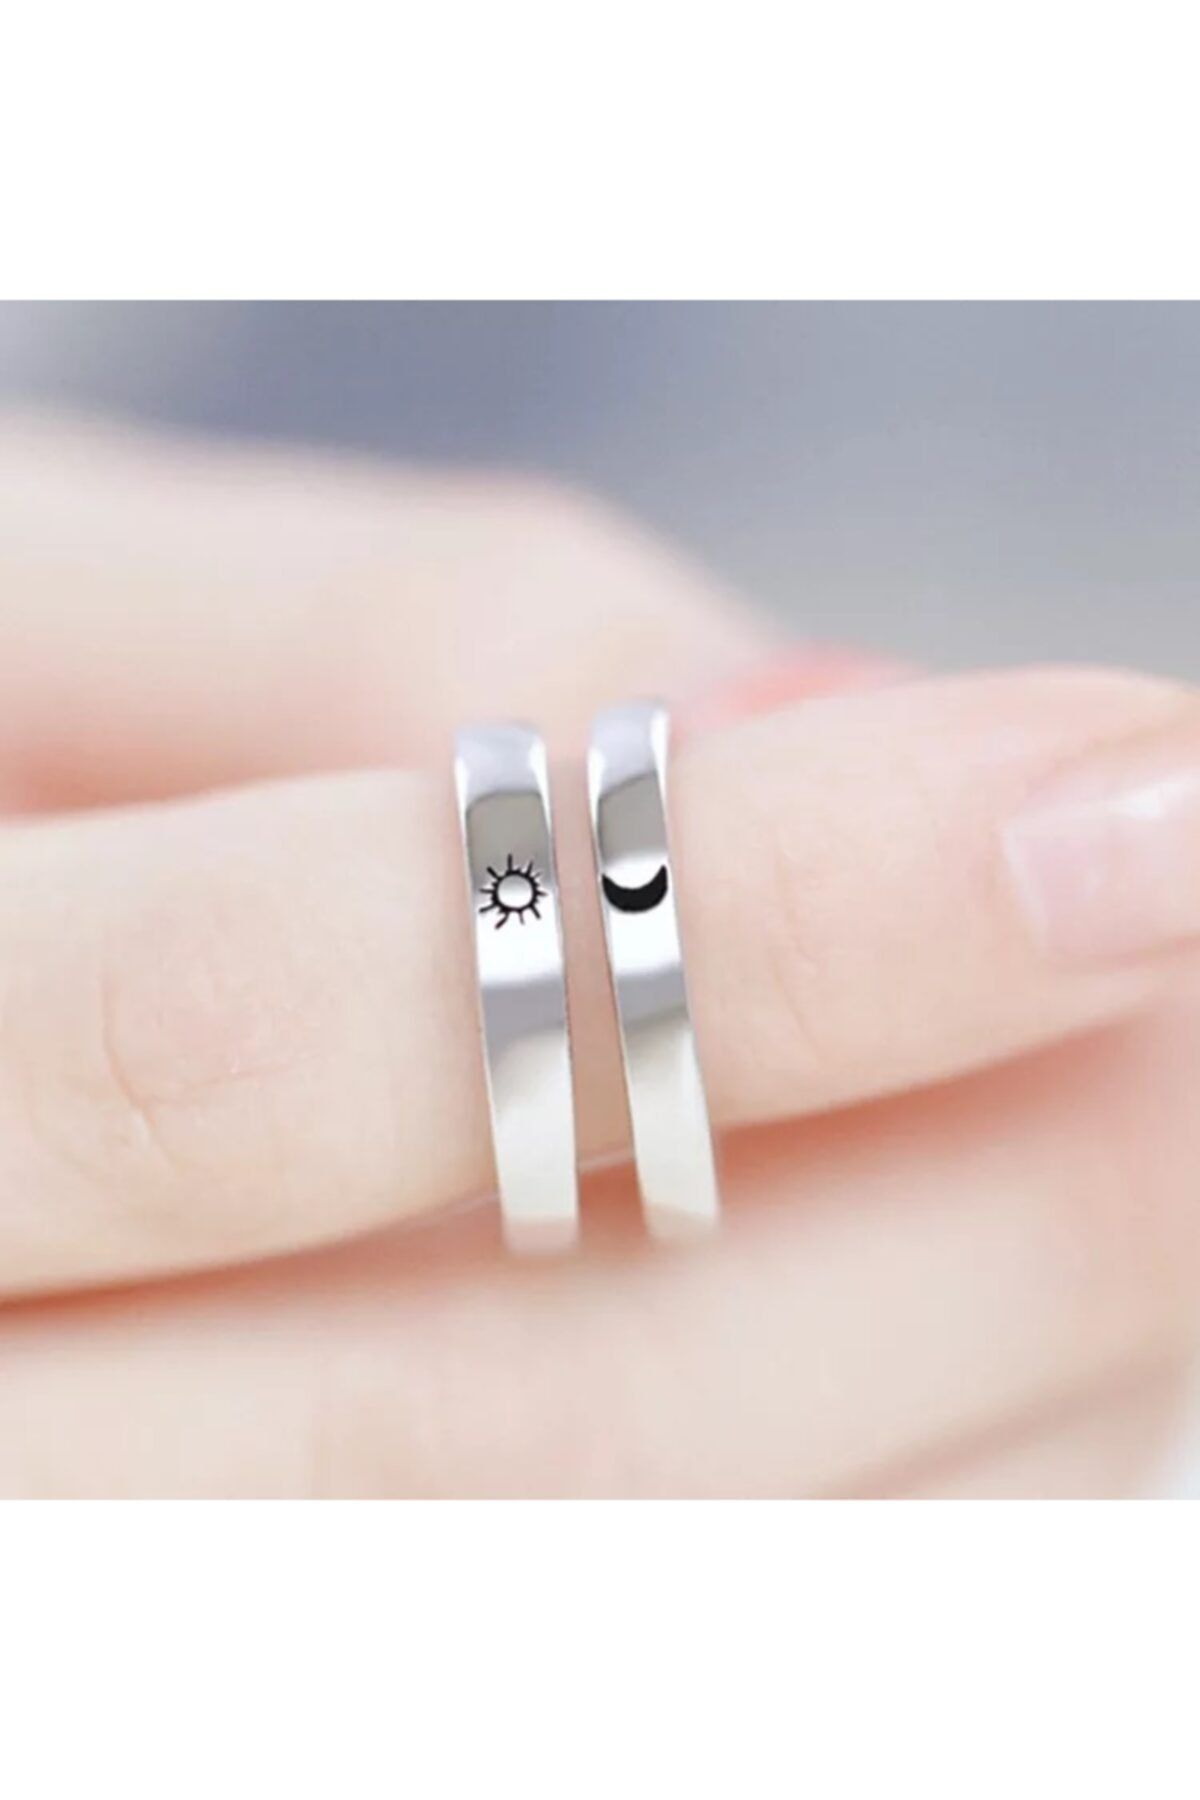 Ladybug Güneş Ay Sembollü Çift Yüzüğü , Sevgili Yüzüğü , Söz , Nişan Yüzüğü